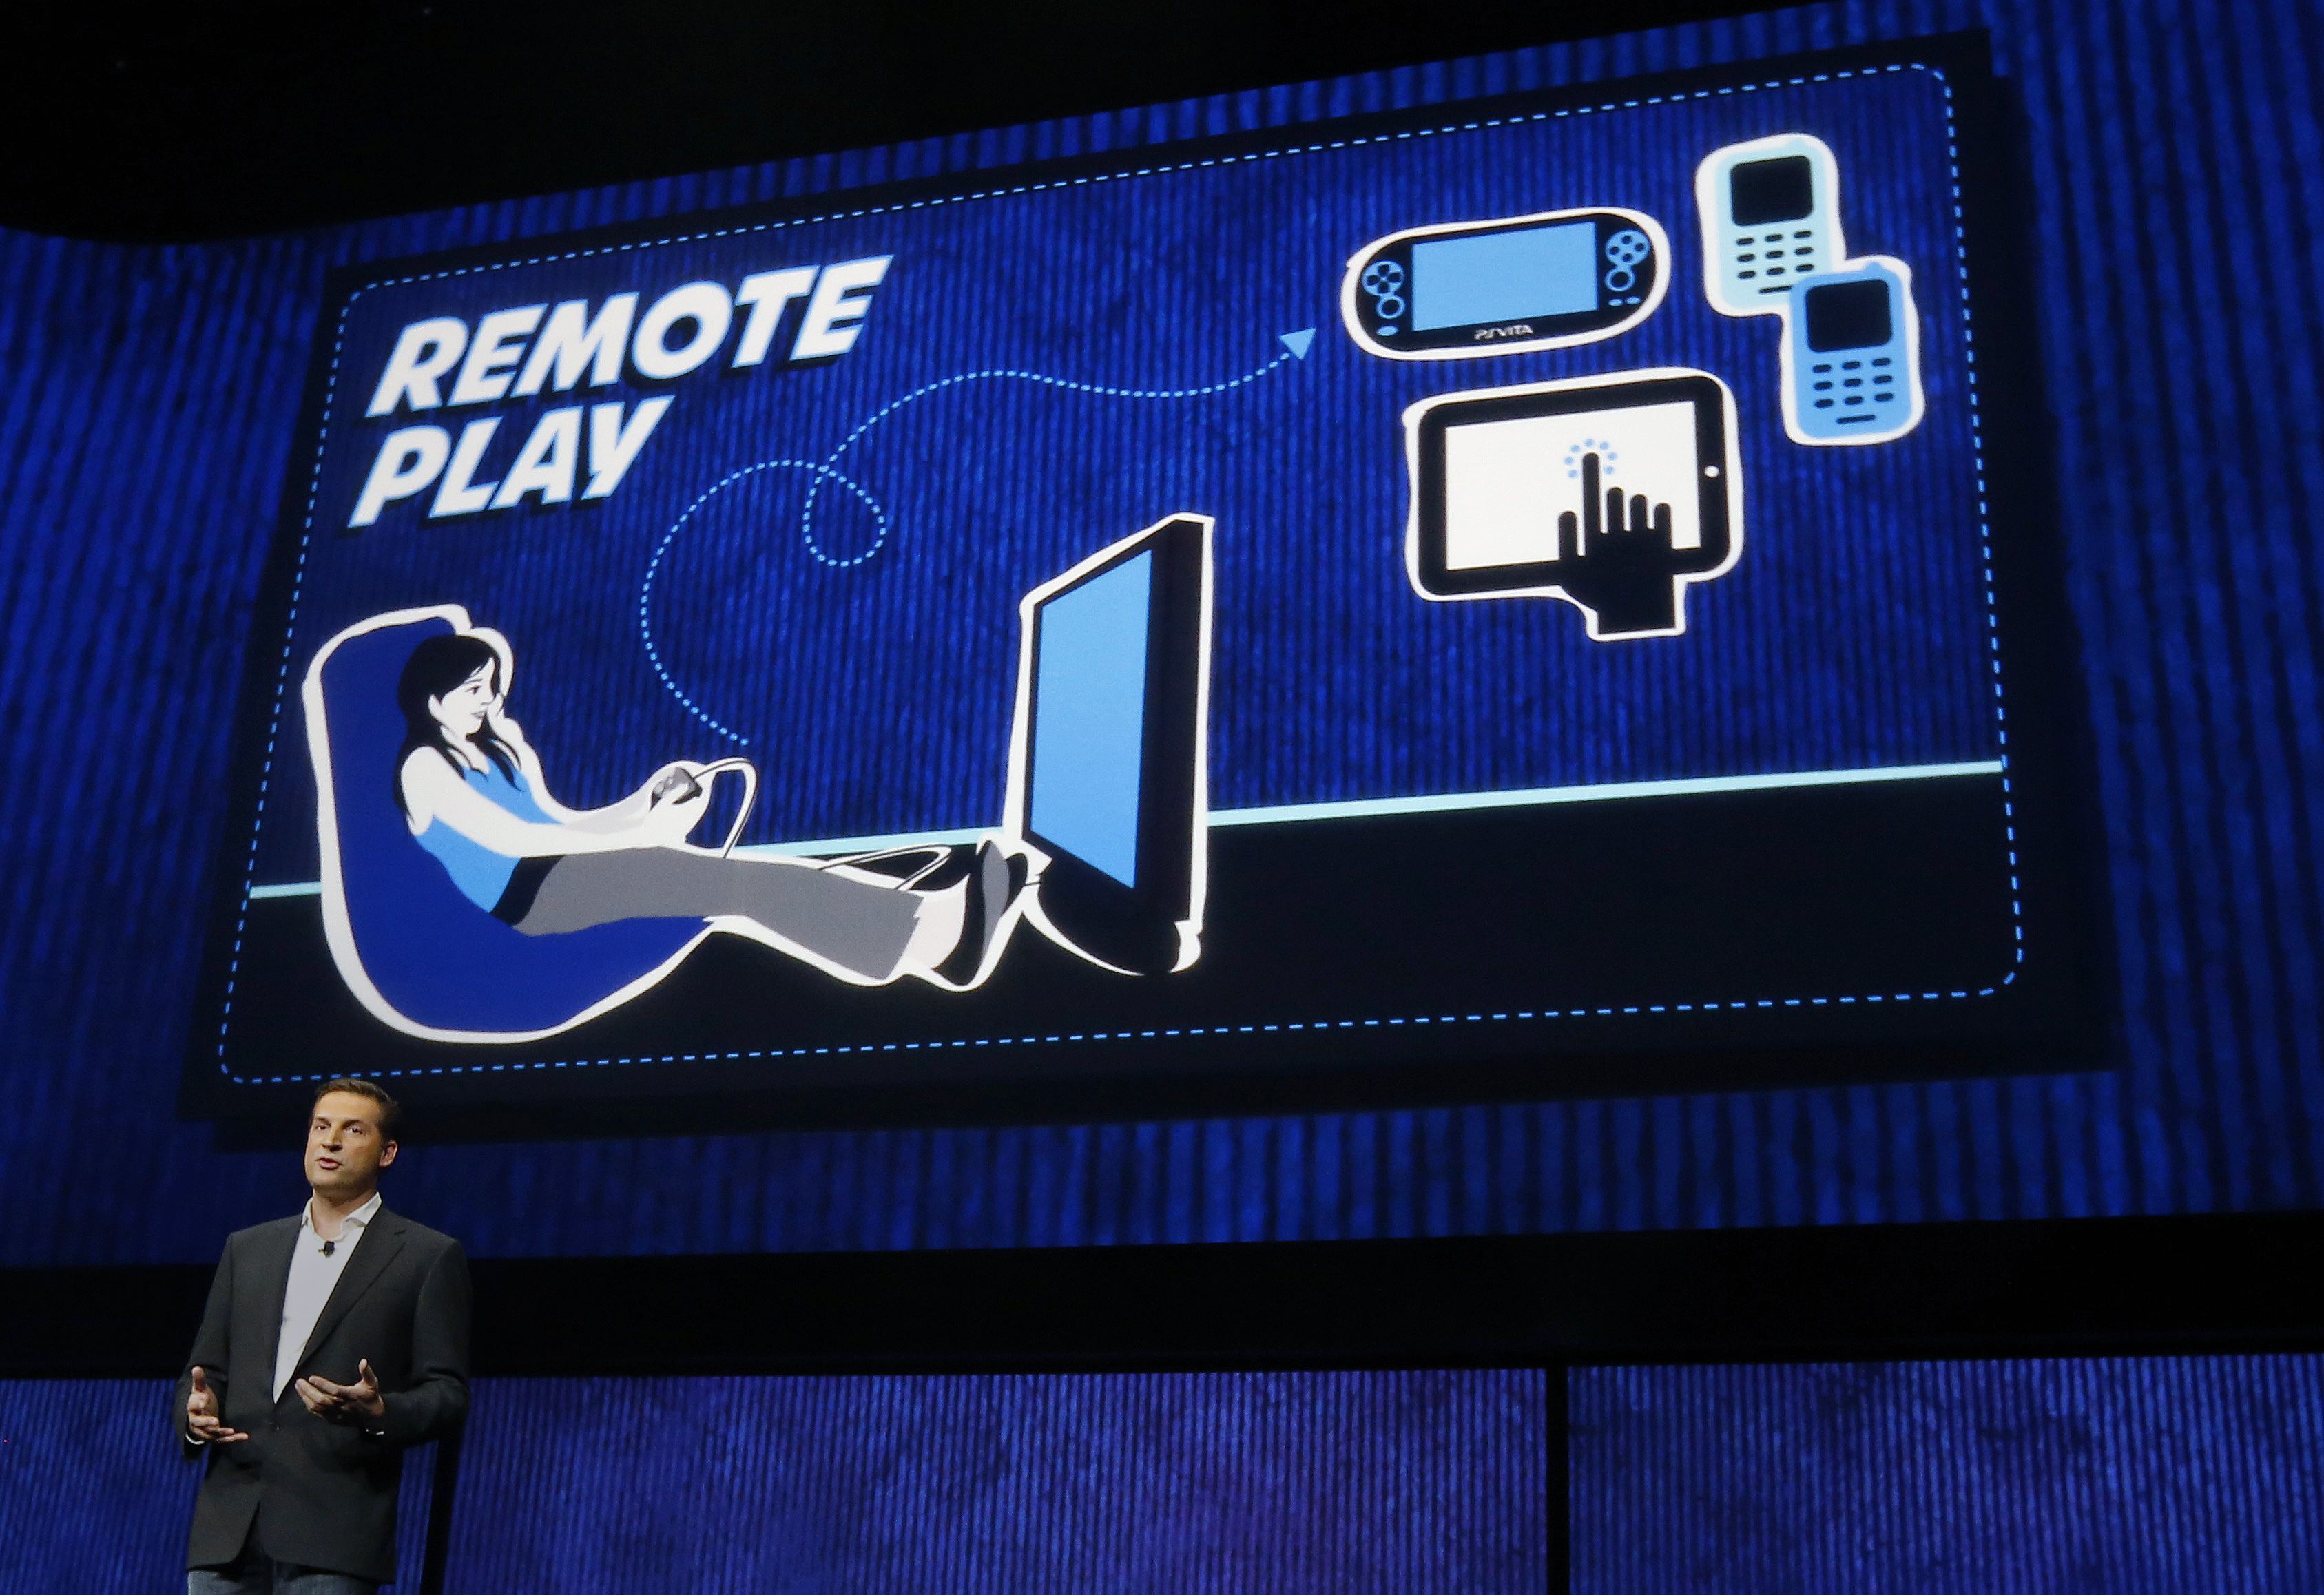 Le Remote play, sur tous les smartphone android .